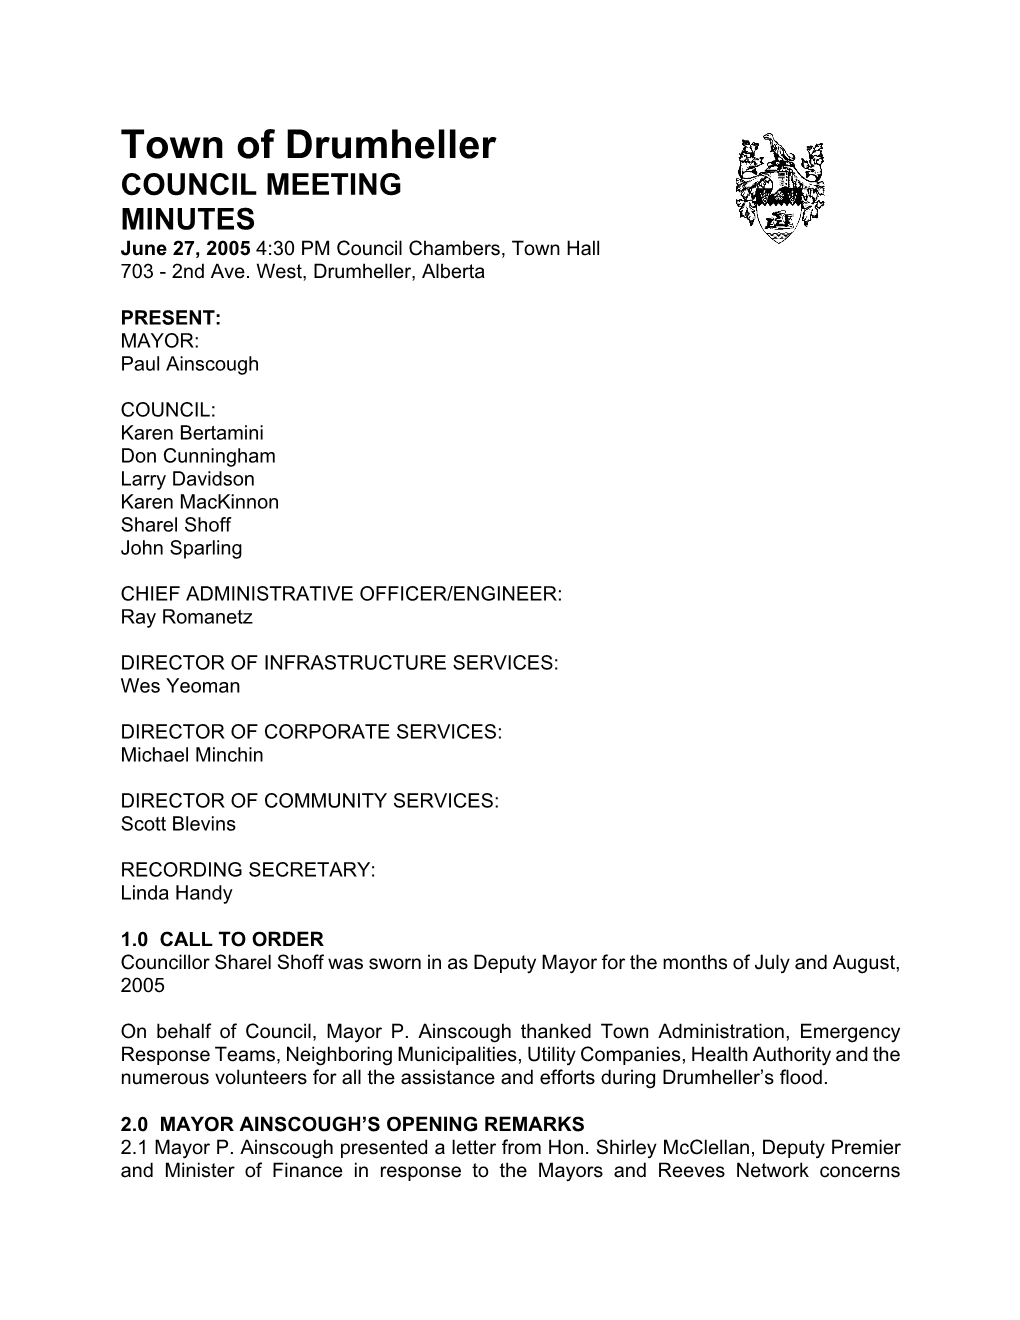 Council Meeting Jun 27 05